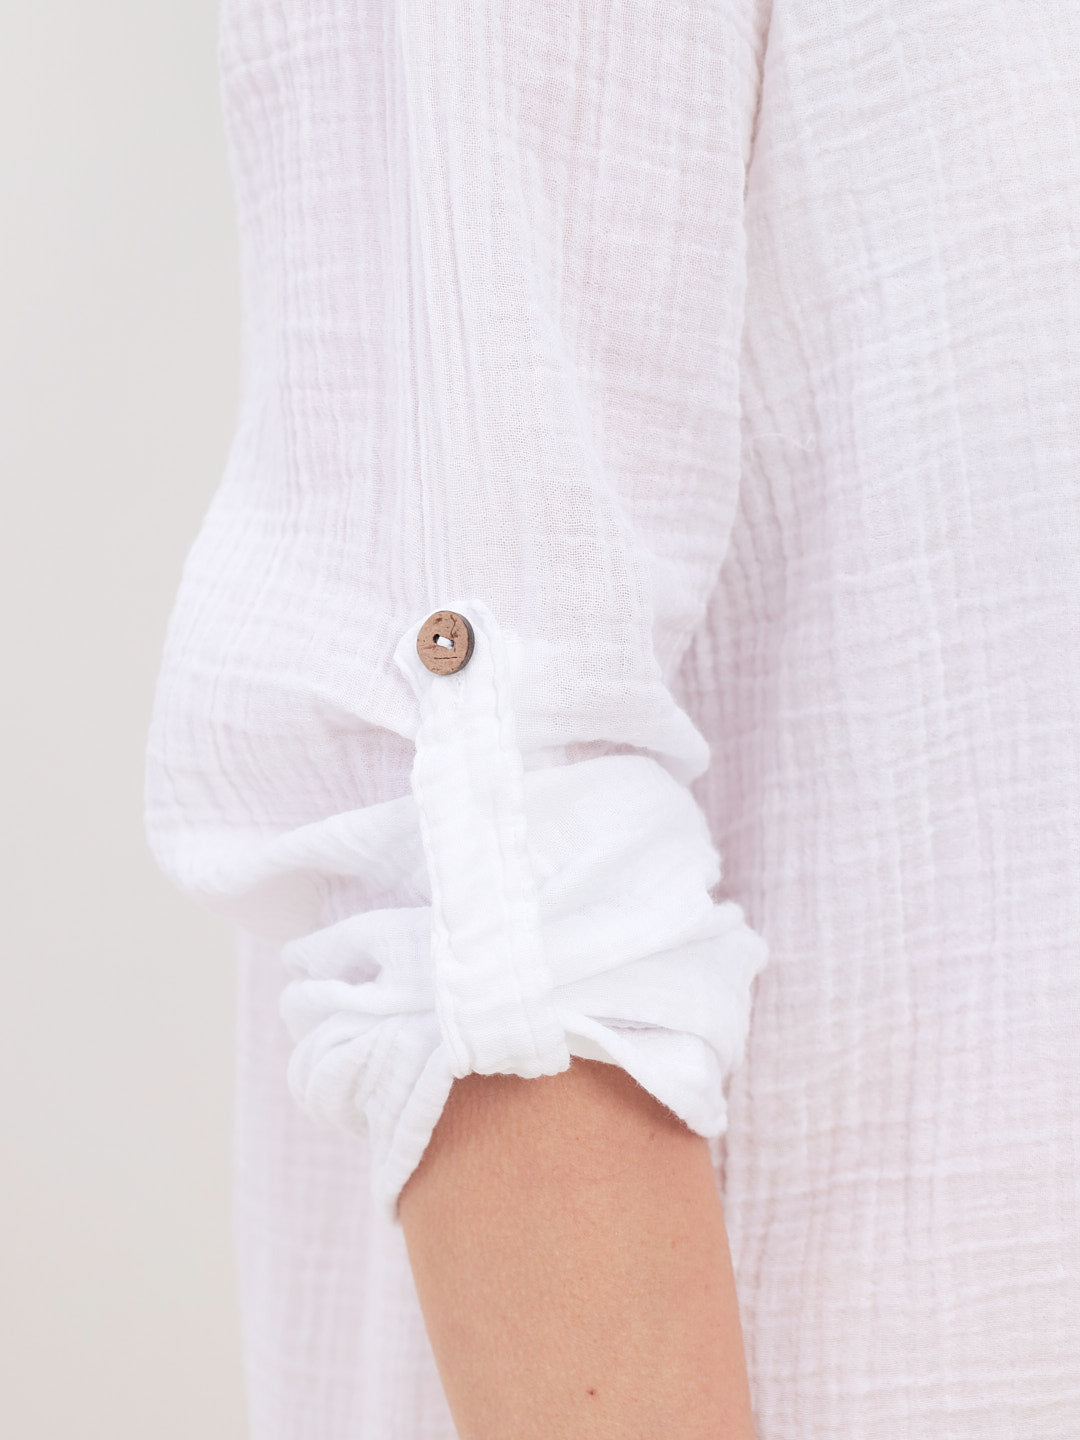 Damen Sommer Mode Hemd aus lässige Musselin Freizeit LMS-6453 White